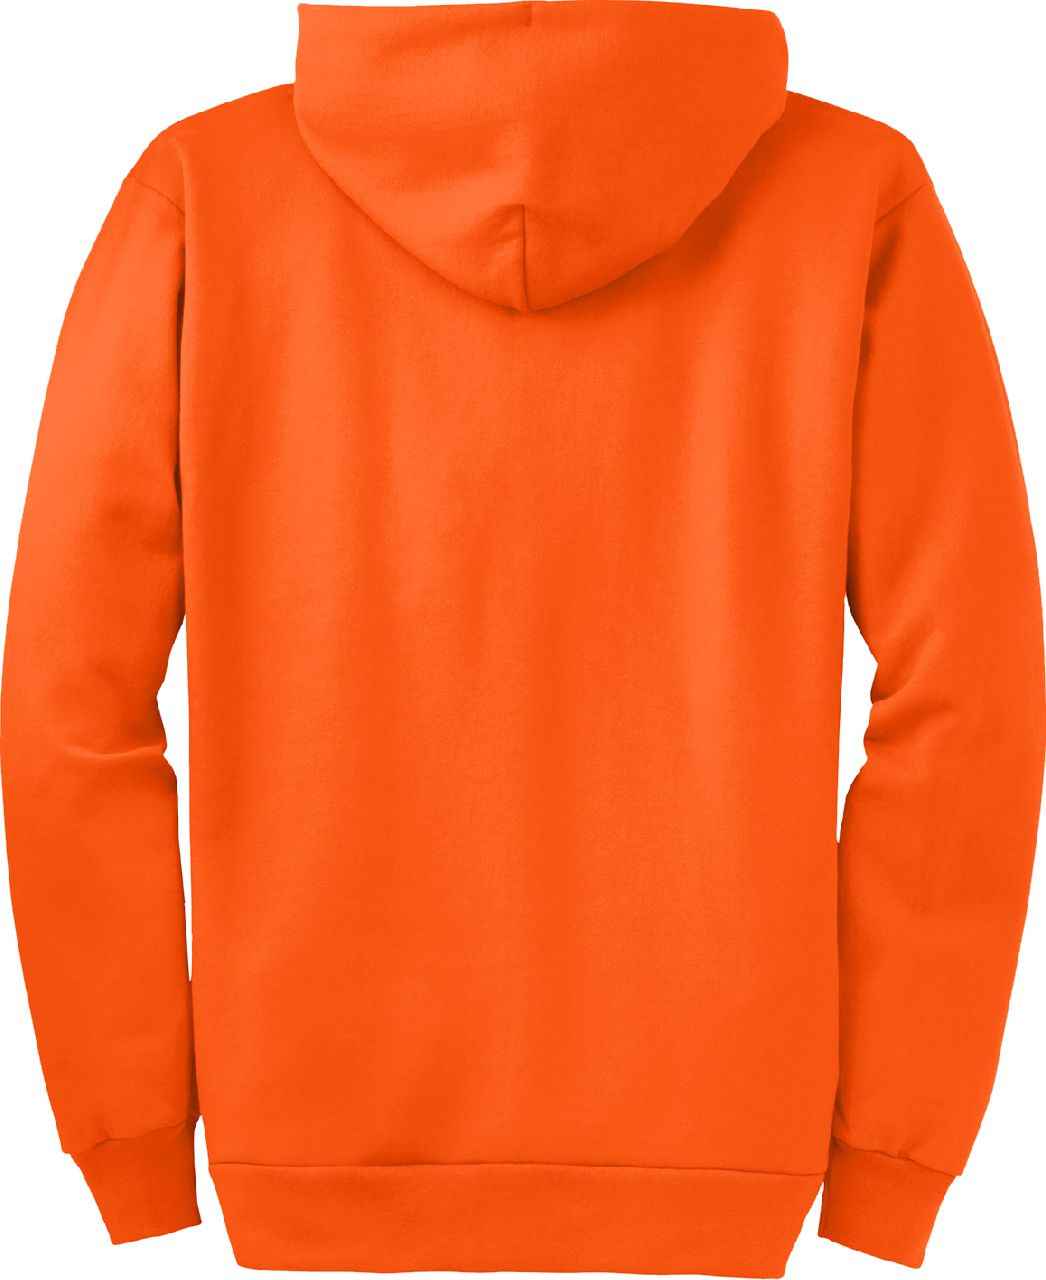 Safety Orange Hooded Zipper Sweatshirt | Bright Orange Zipper Sweater | Safety Orange Sweatshirt | Neon Orange Zipper Hoodie | Orange Zipper Hoodie